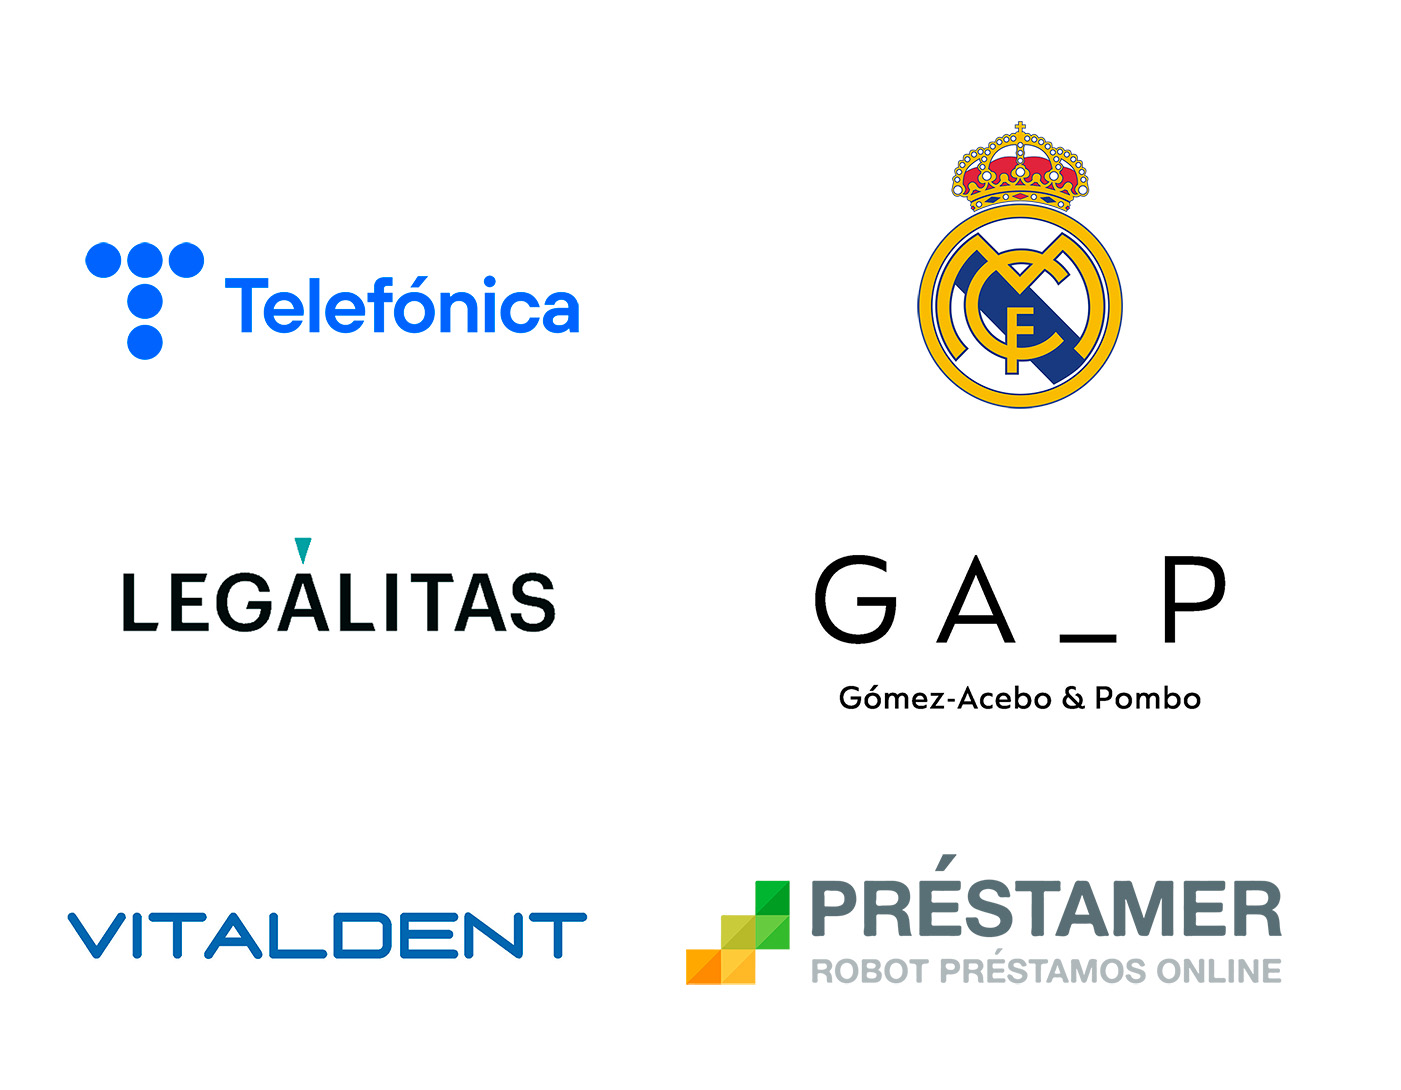 Cuadro de imagen de referencia de los logotipos de marcas reconocidas; de izquierda a derecha: telefonica, real madrid, GA_P, Vitalcent, prestamer.